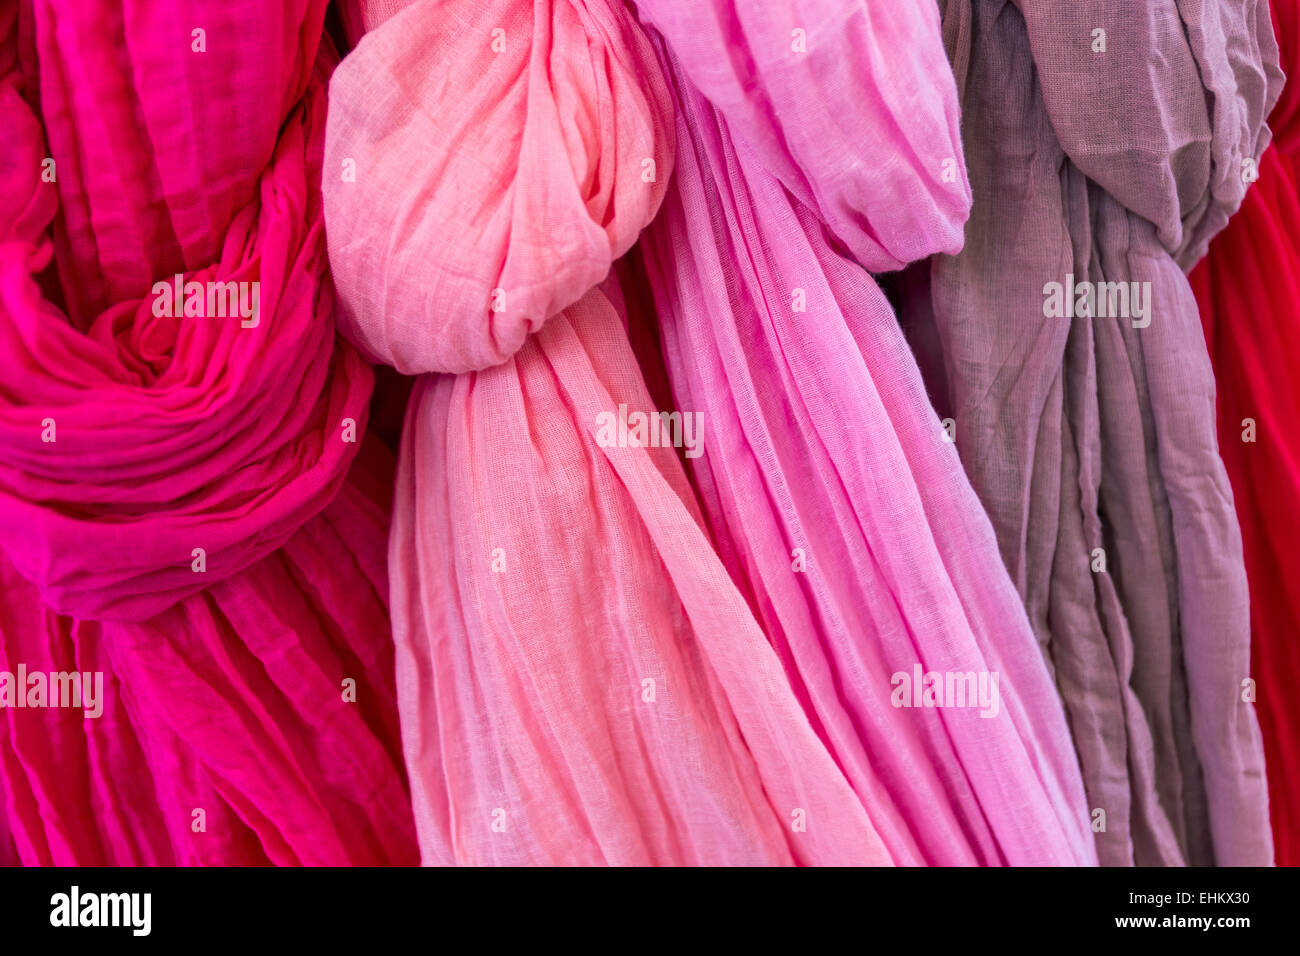 Sélection de diverses variables en foulards roses, pourpres et magenta Banque D'Images